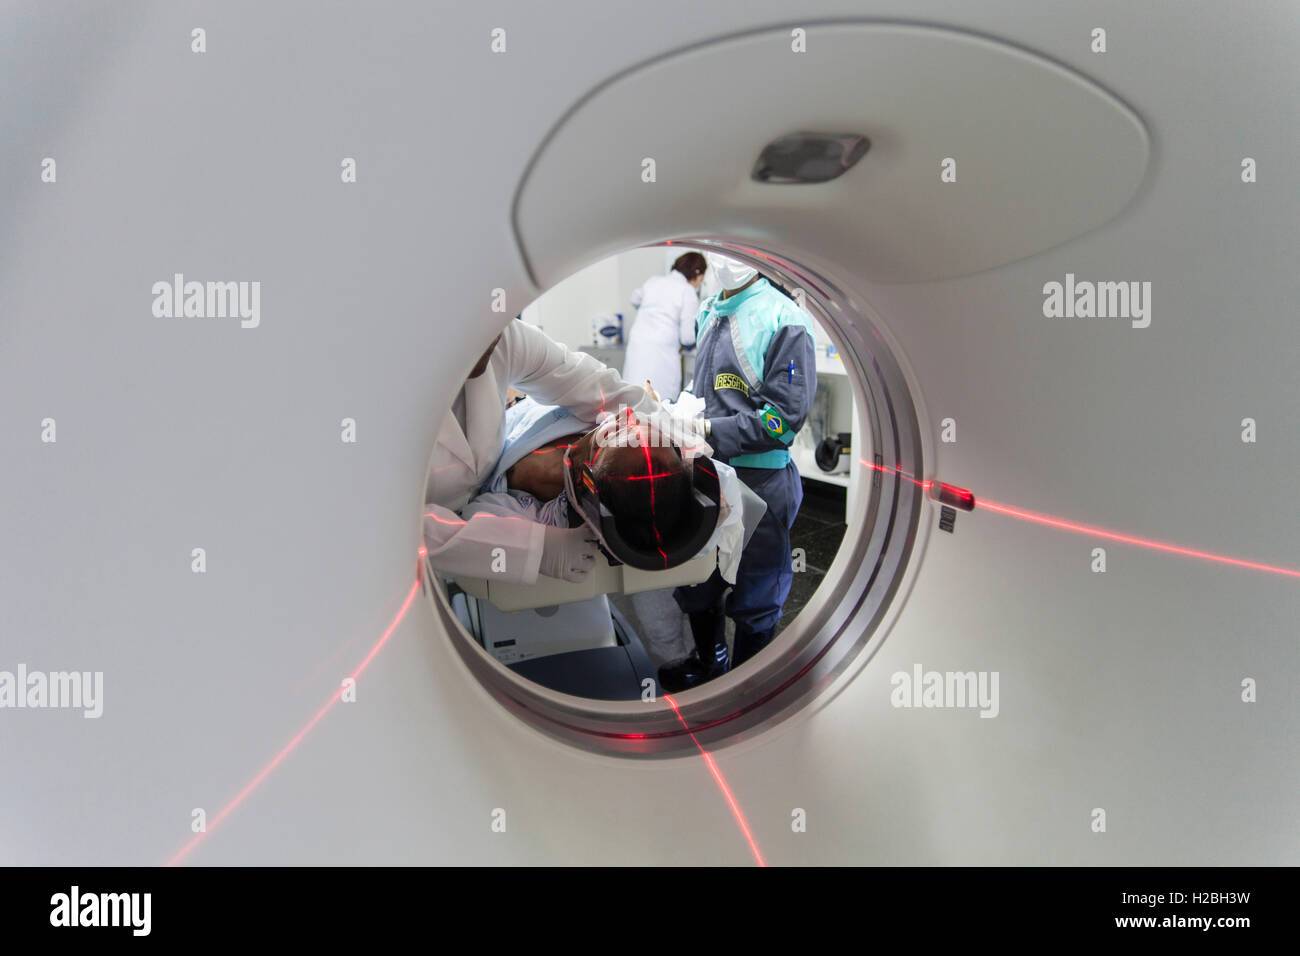 Dans Patient medical scanner IRM, imagerie par résonance magnétique, une technique d'imagerie médicale utilisé en radiologie à l'image de l'anatomie et les processus physiologiques de l'organisme dans les domaines de la santé et de la maladie - l'utilisation d'IRM de forts champs magnétiques, les ondes radio, gradients de champ et pour former des images du corps. Banque D'Images